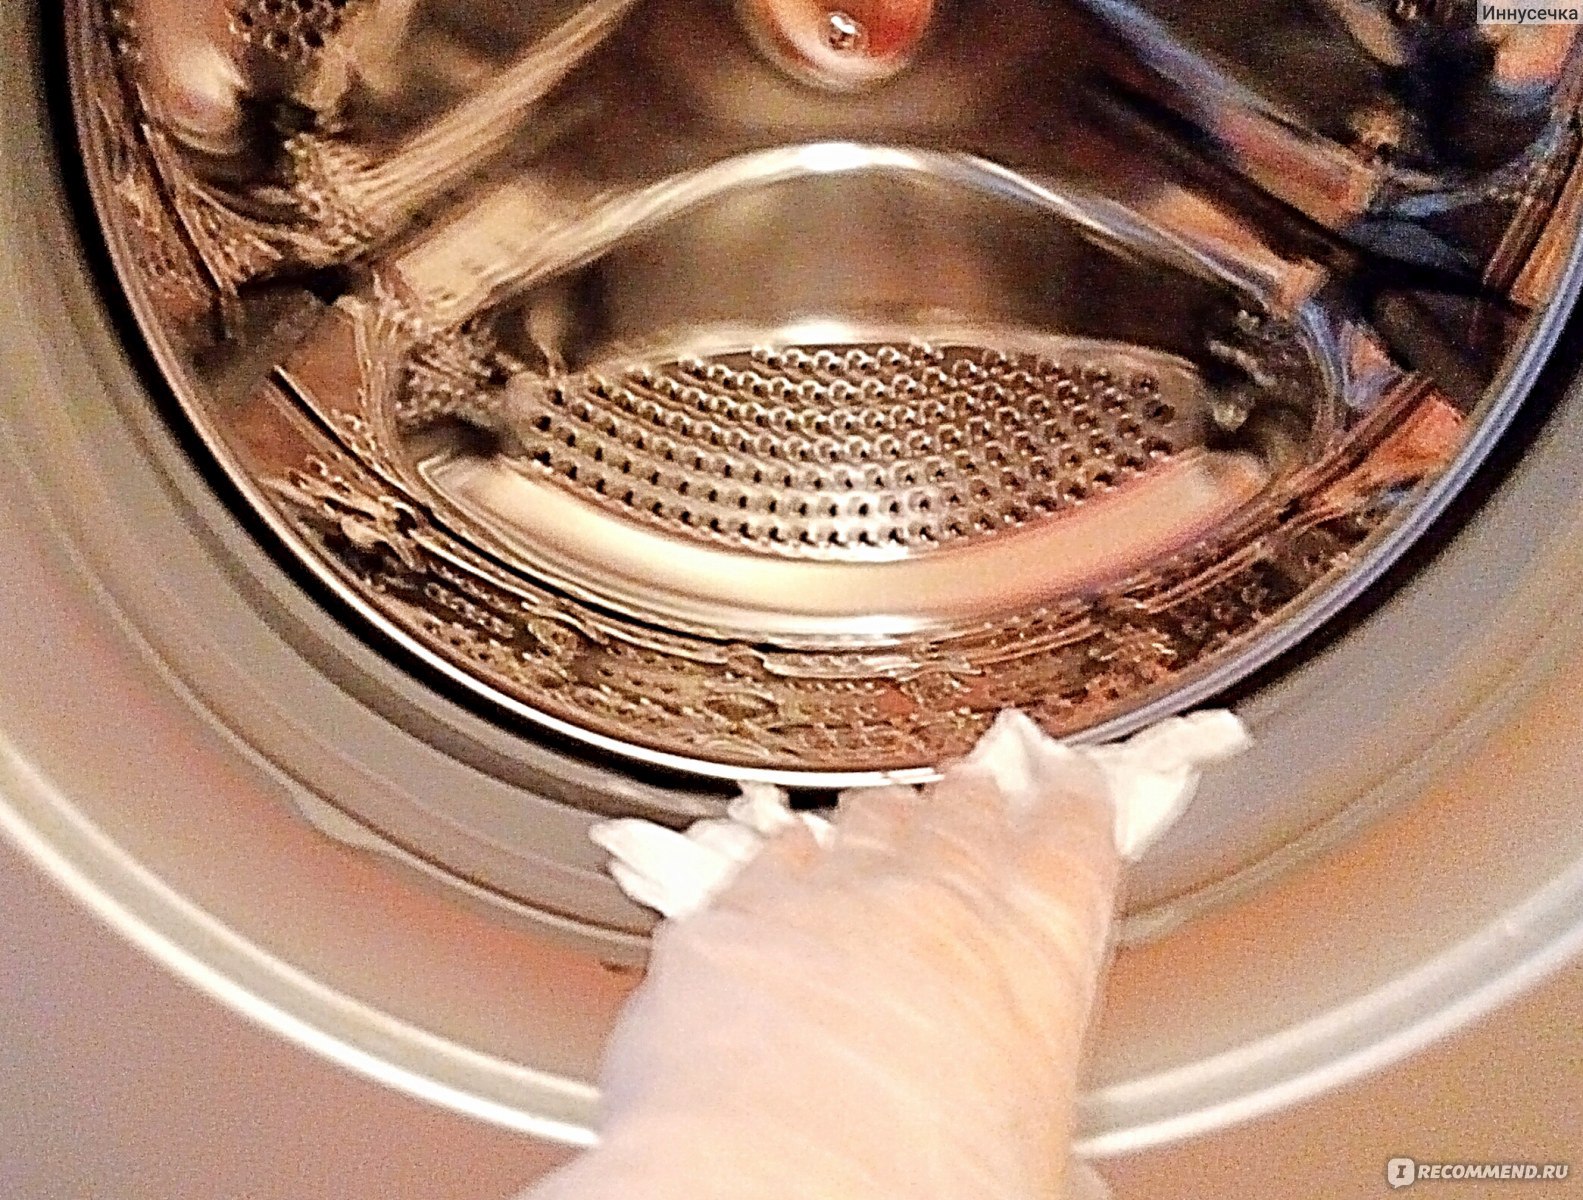 Чистка стиральной машины купить. Барабан машинки. Чистка стиральной машины. Запах из стиральной машины средства. Пахнет из барабана стиральной машины.